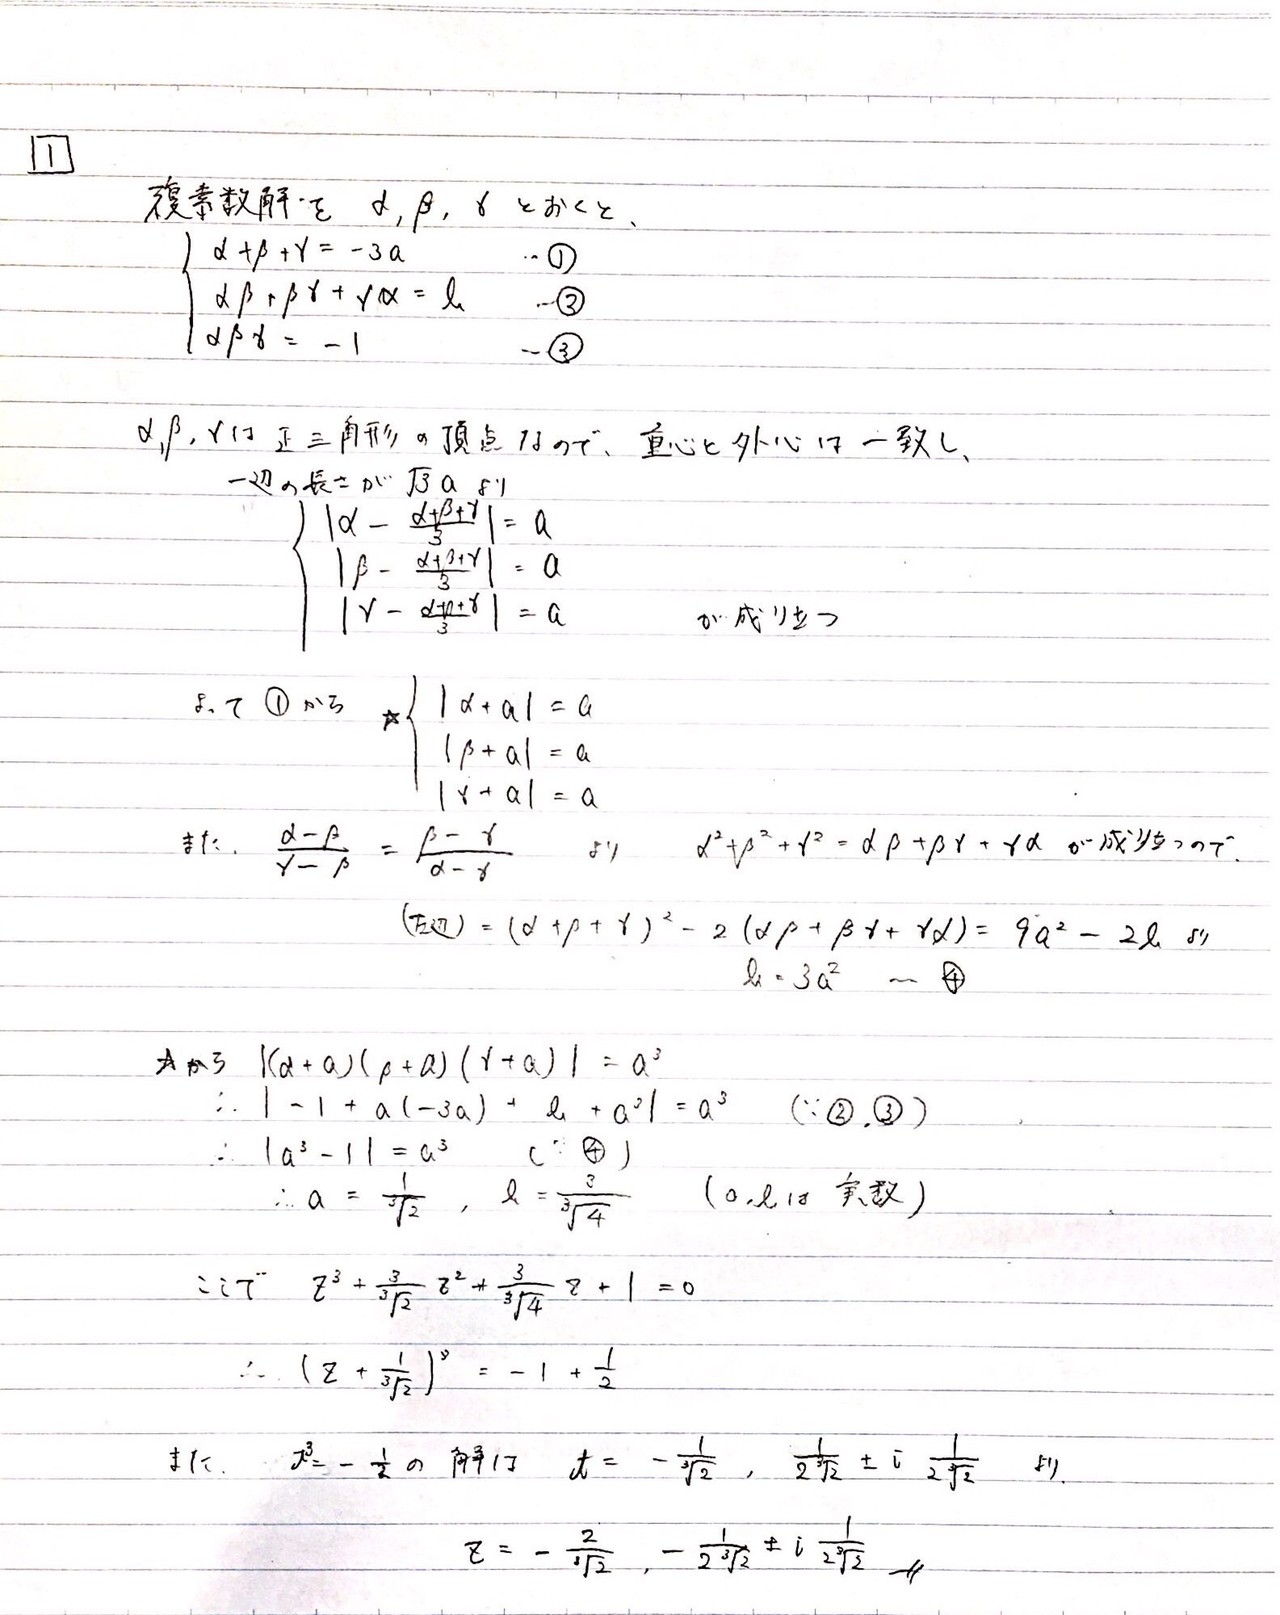 年度京都大学 理系数学 解答例 Oumc 大阪大学数学サークル Note